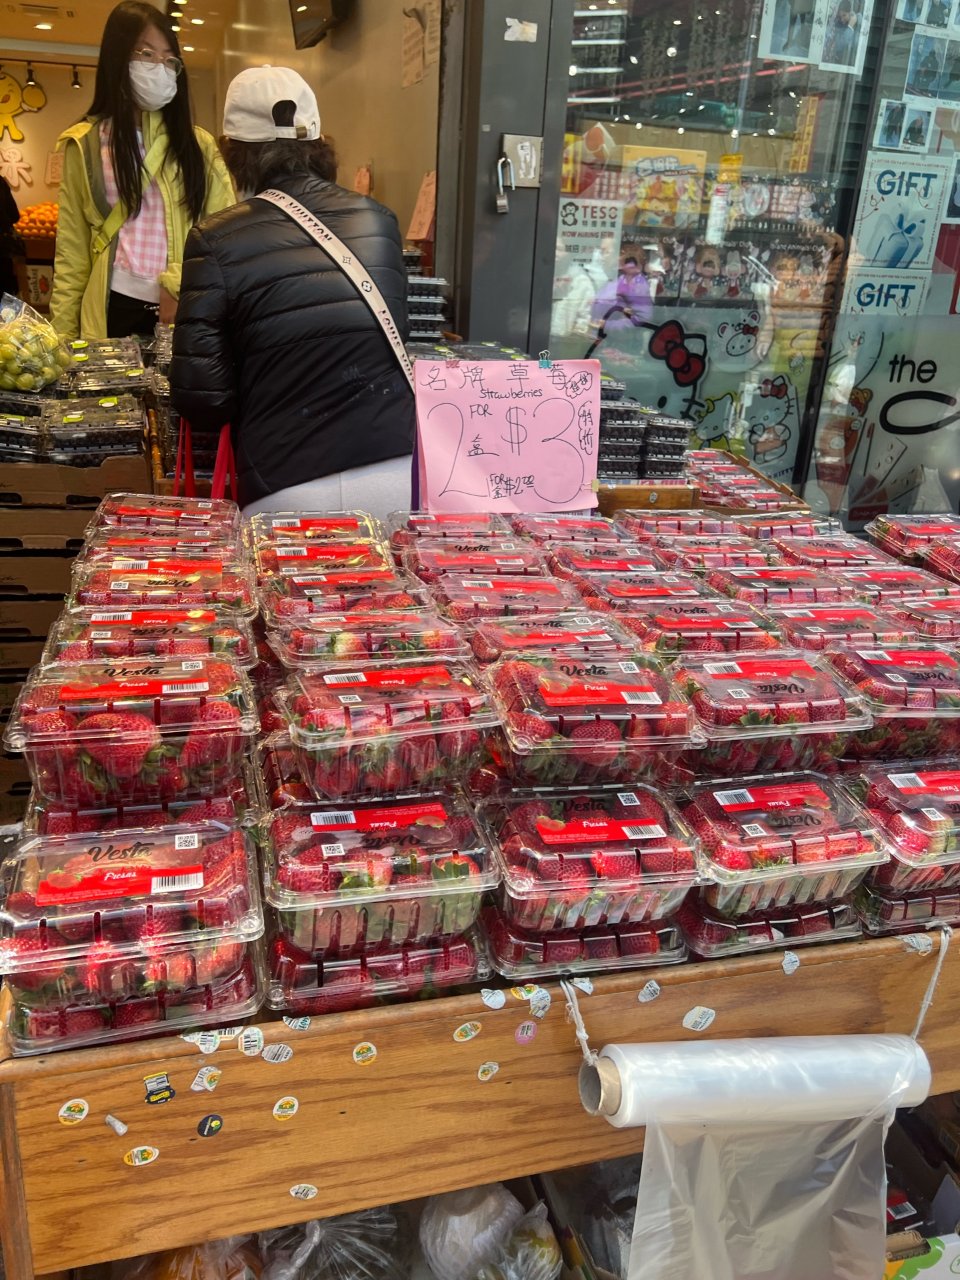 包果园今天的草莓🍓2盒3块钱...